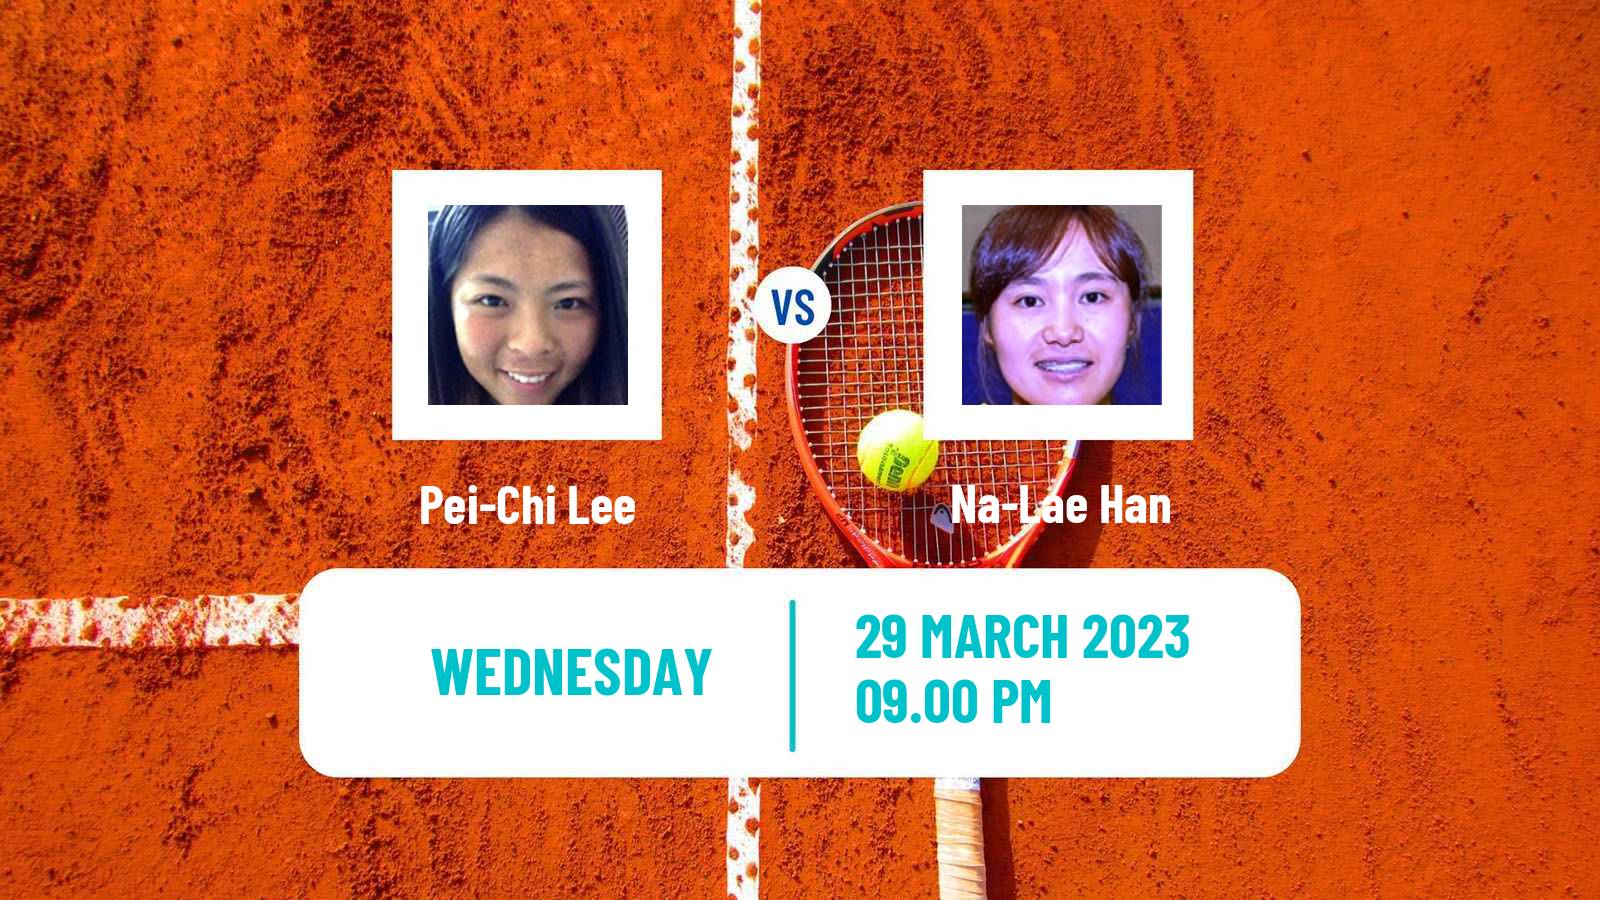 Tennis ITF Tournaments Pei-Chi Lee - Na-Lae Han